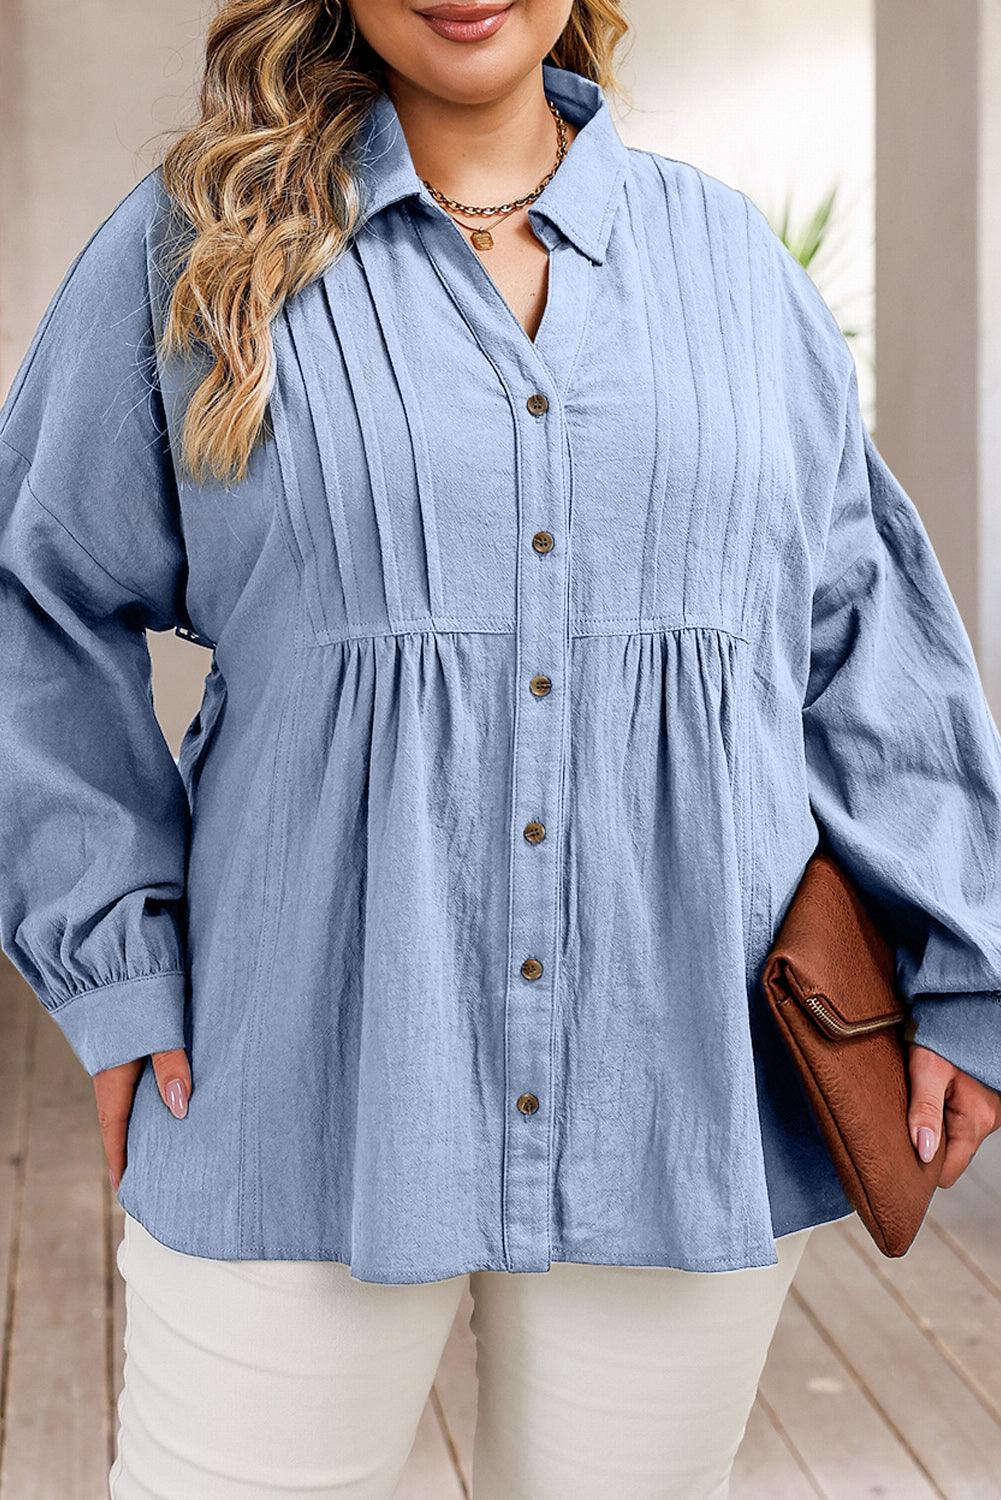 Plus Size High-Low Button Up Dropped Shoulder Shirt - Lucianne Boutique